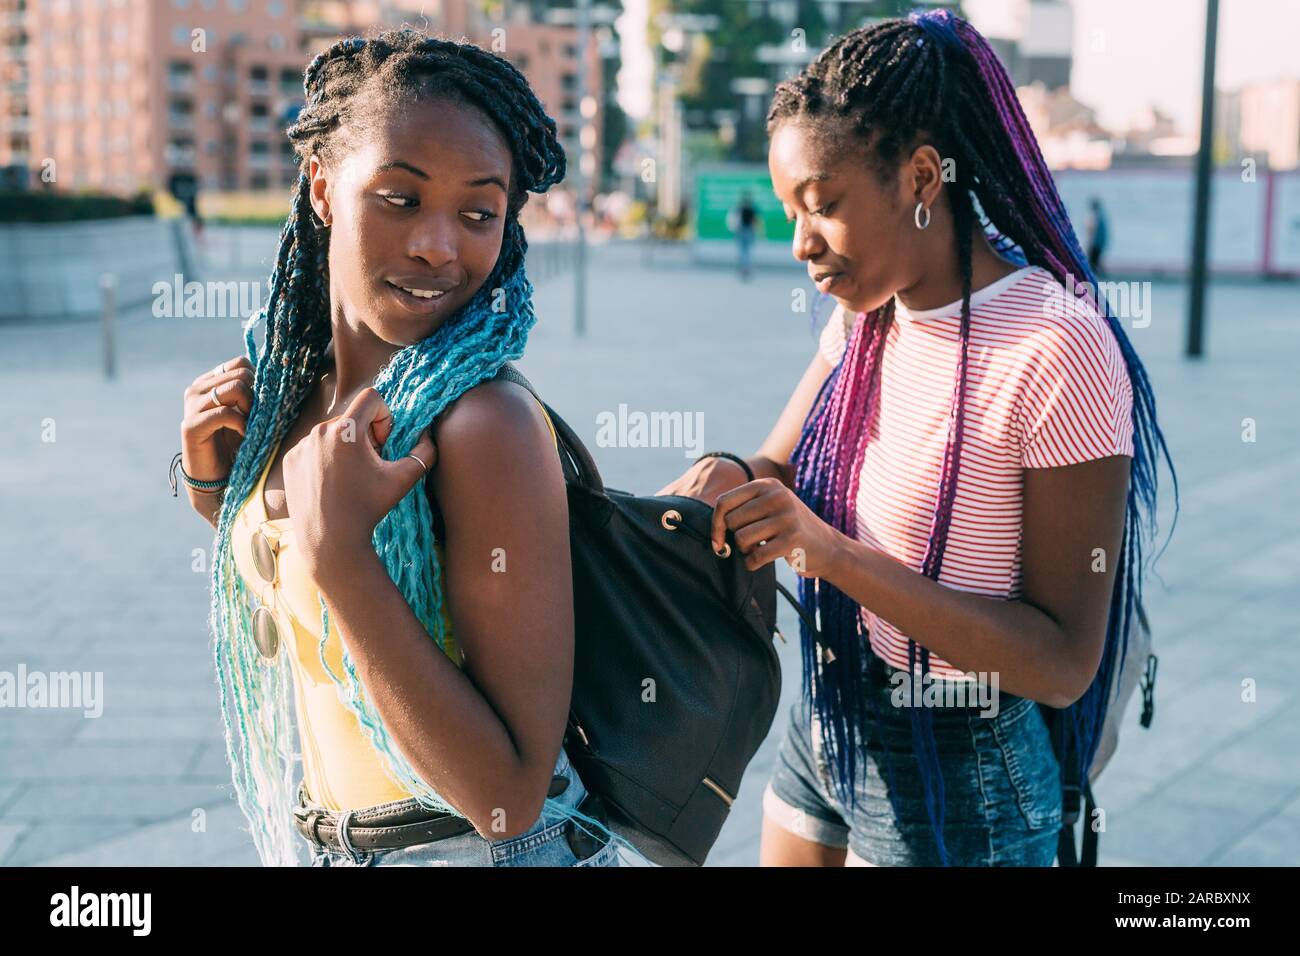 Junge schwarze Frau, die in ihre Ledertasche ihrer Schwester schaut und nach etwas sucht - nach einem Konzept suchen, suchen, sich ein Konzept angucken Stockfoto